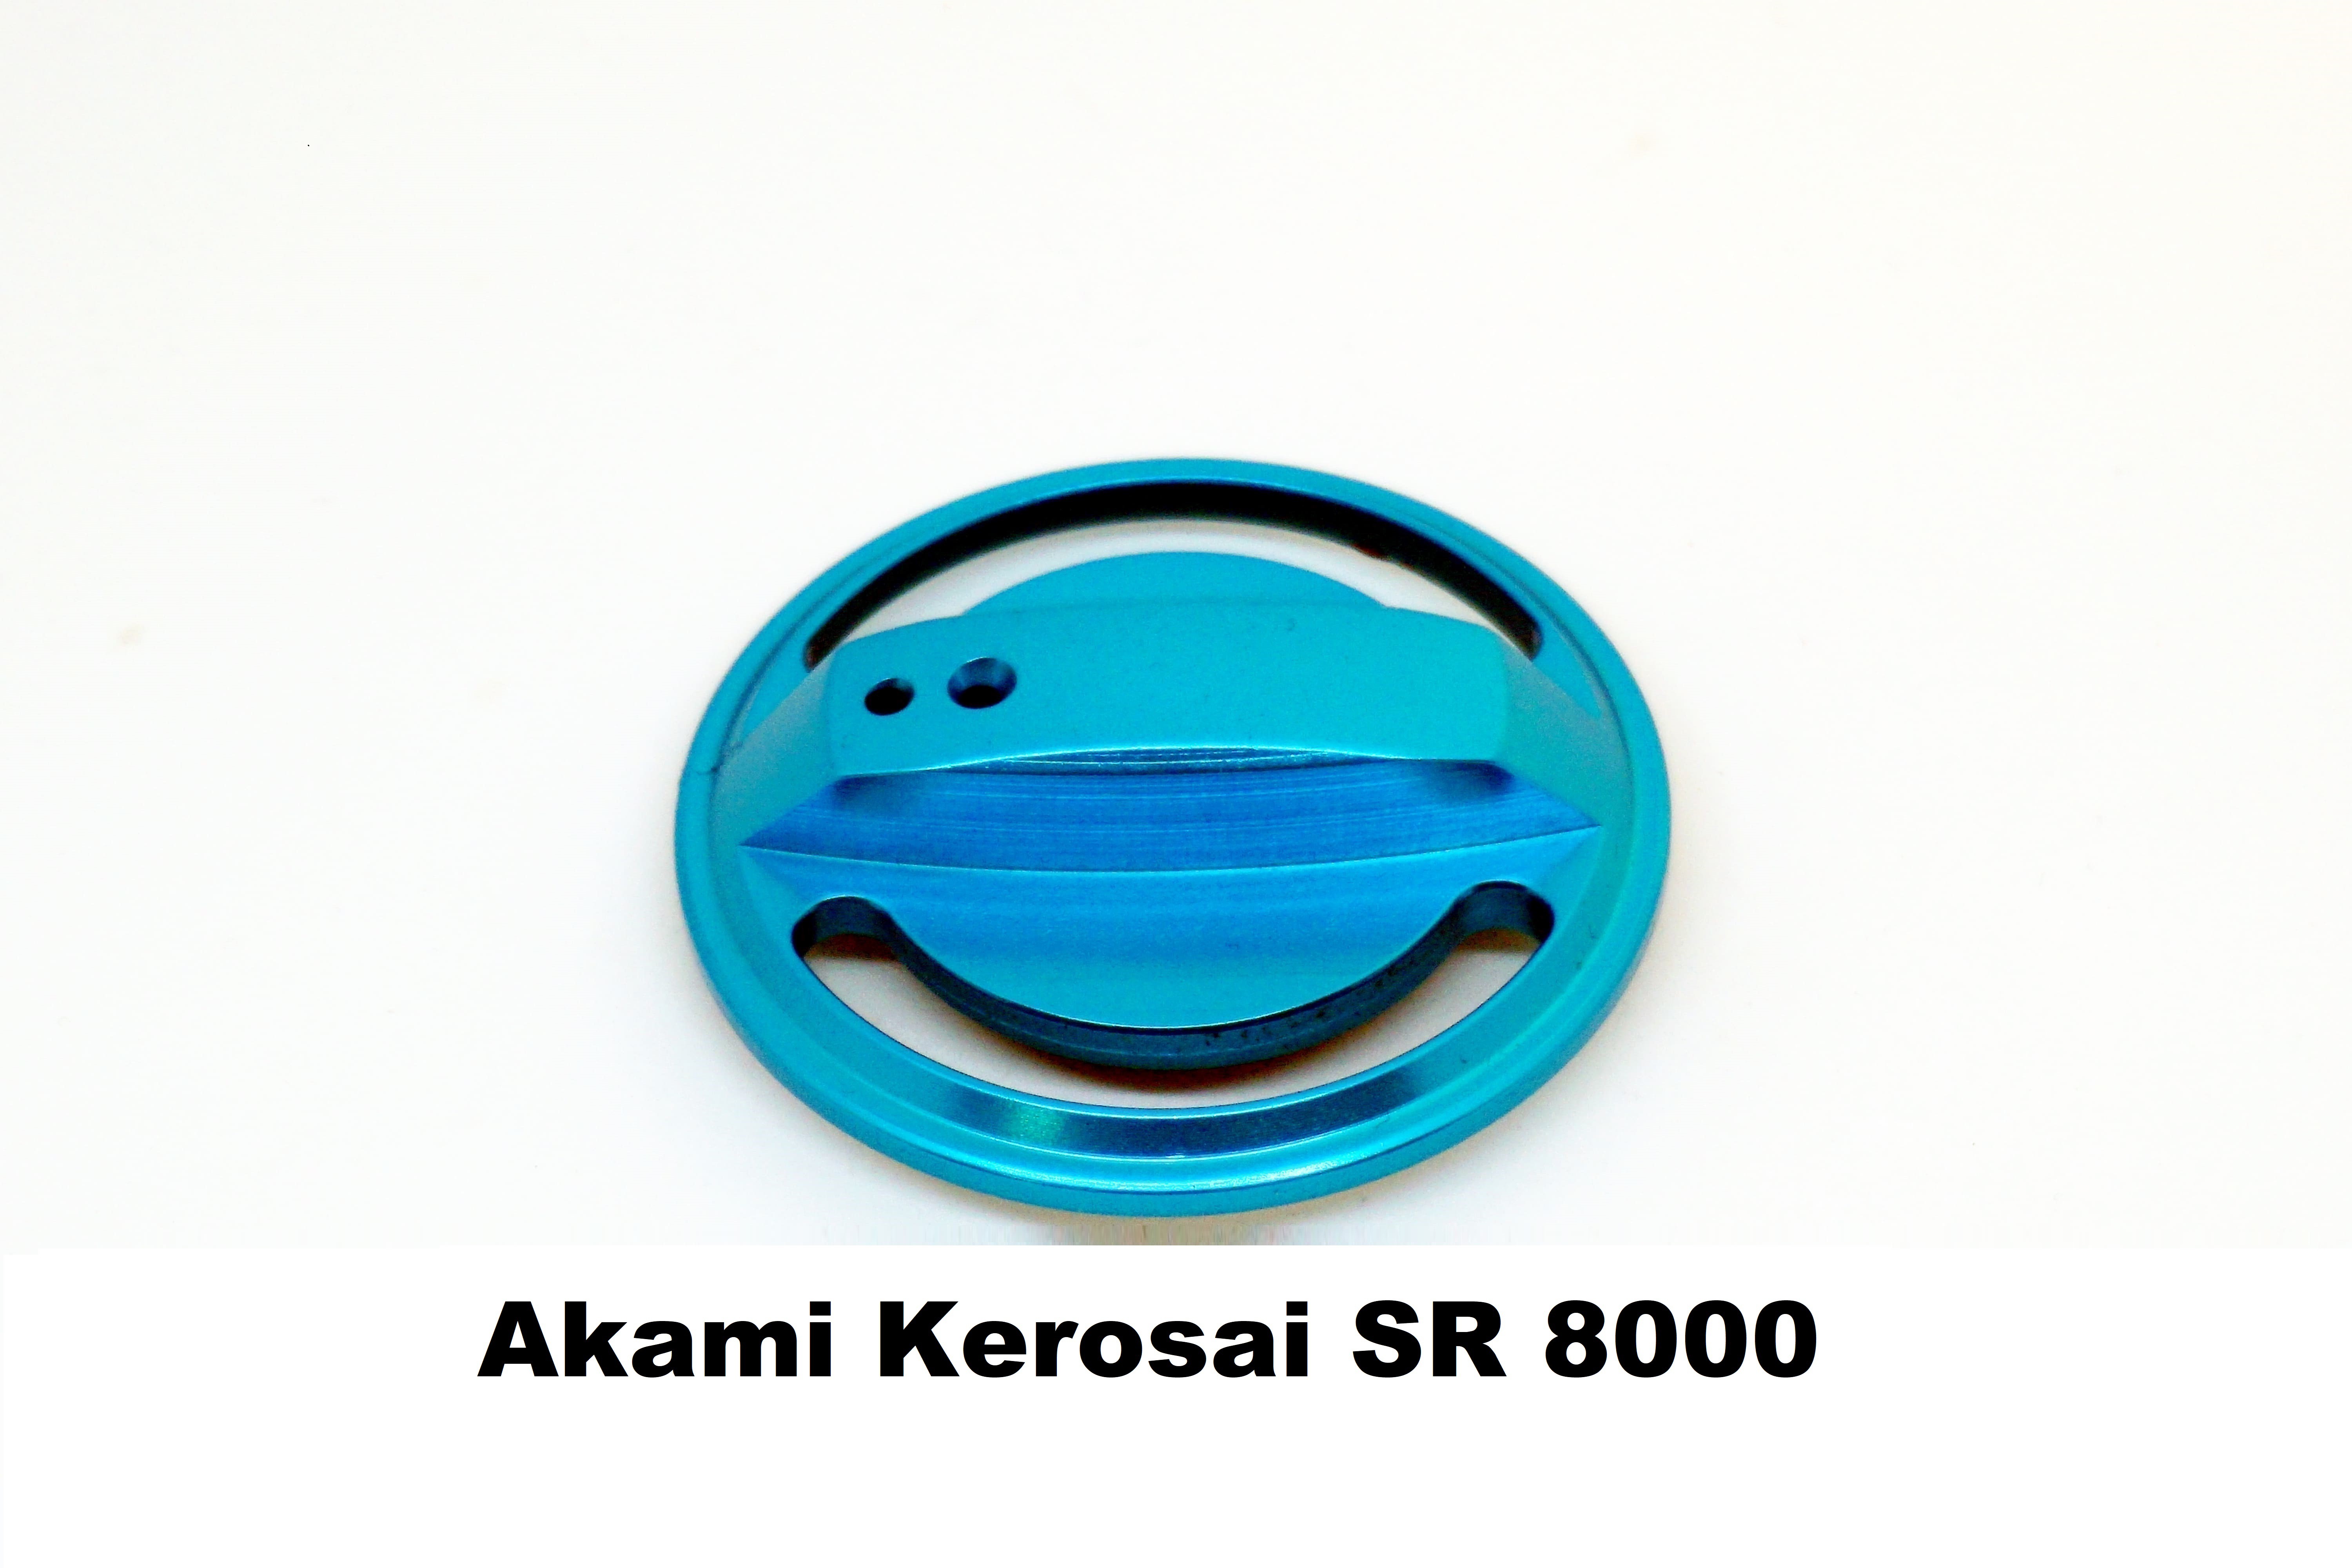 Bremsenknopf für Brandungsrolle Akami Kerosai SR 8000